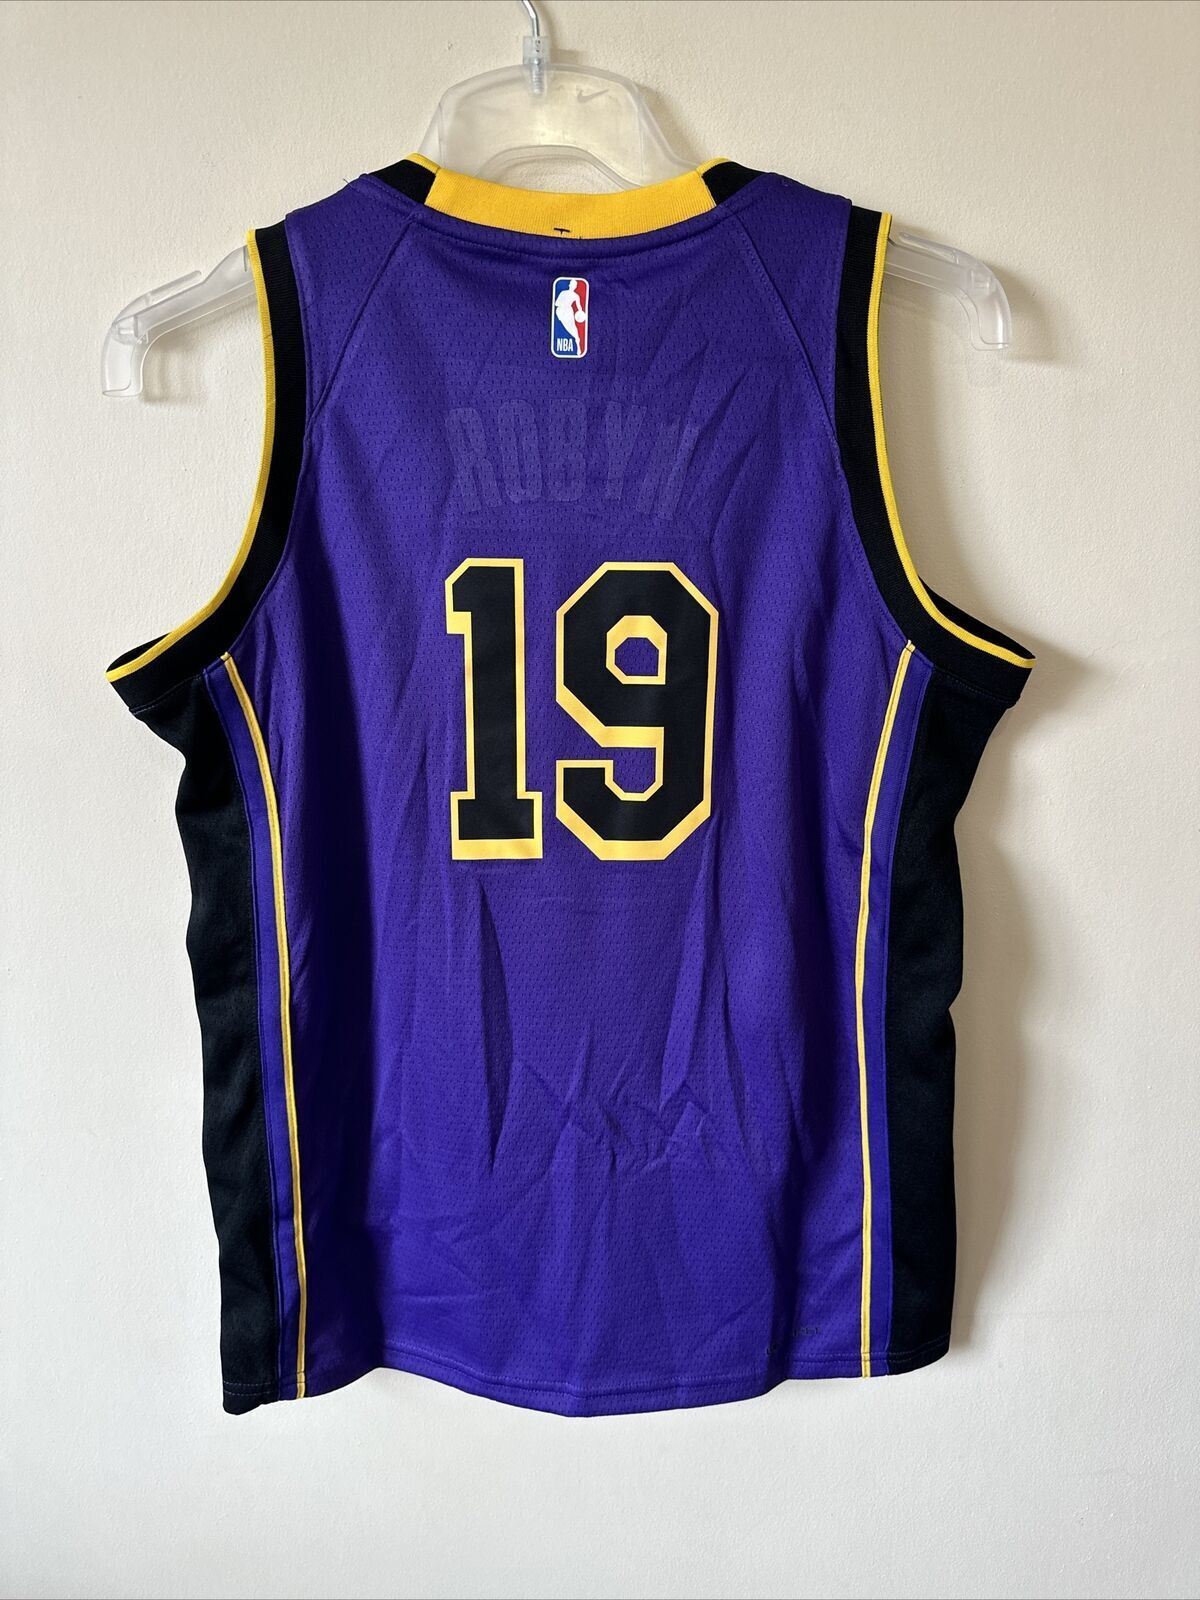 Nike NBA LA Lakers Statement Edition Jersey ‘19’ Youth 12-13 Years